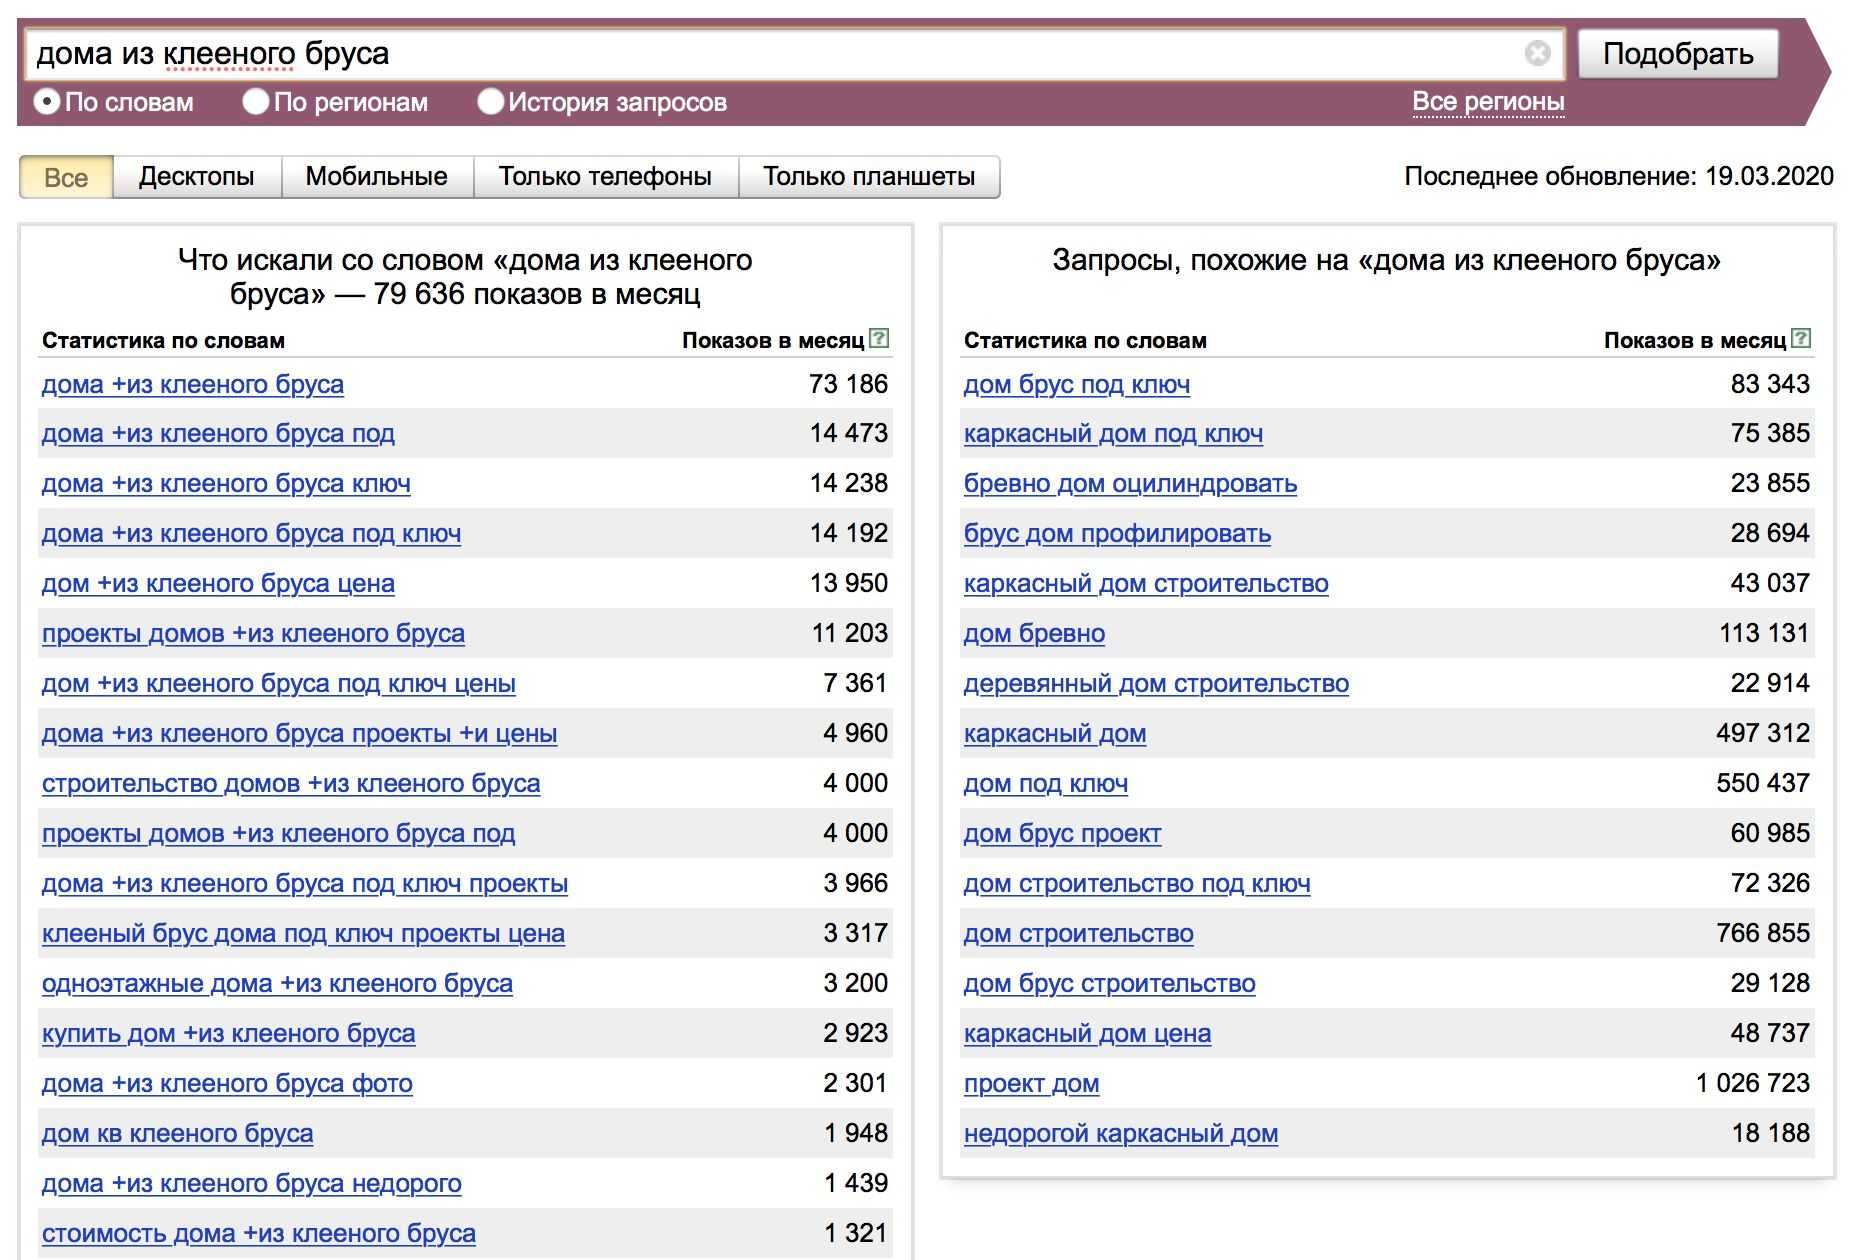 Поиск популярных запросов. Популярные запросы в Яндексе. Вордстат. Статистика запросов в интернете.